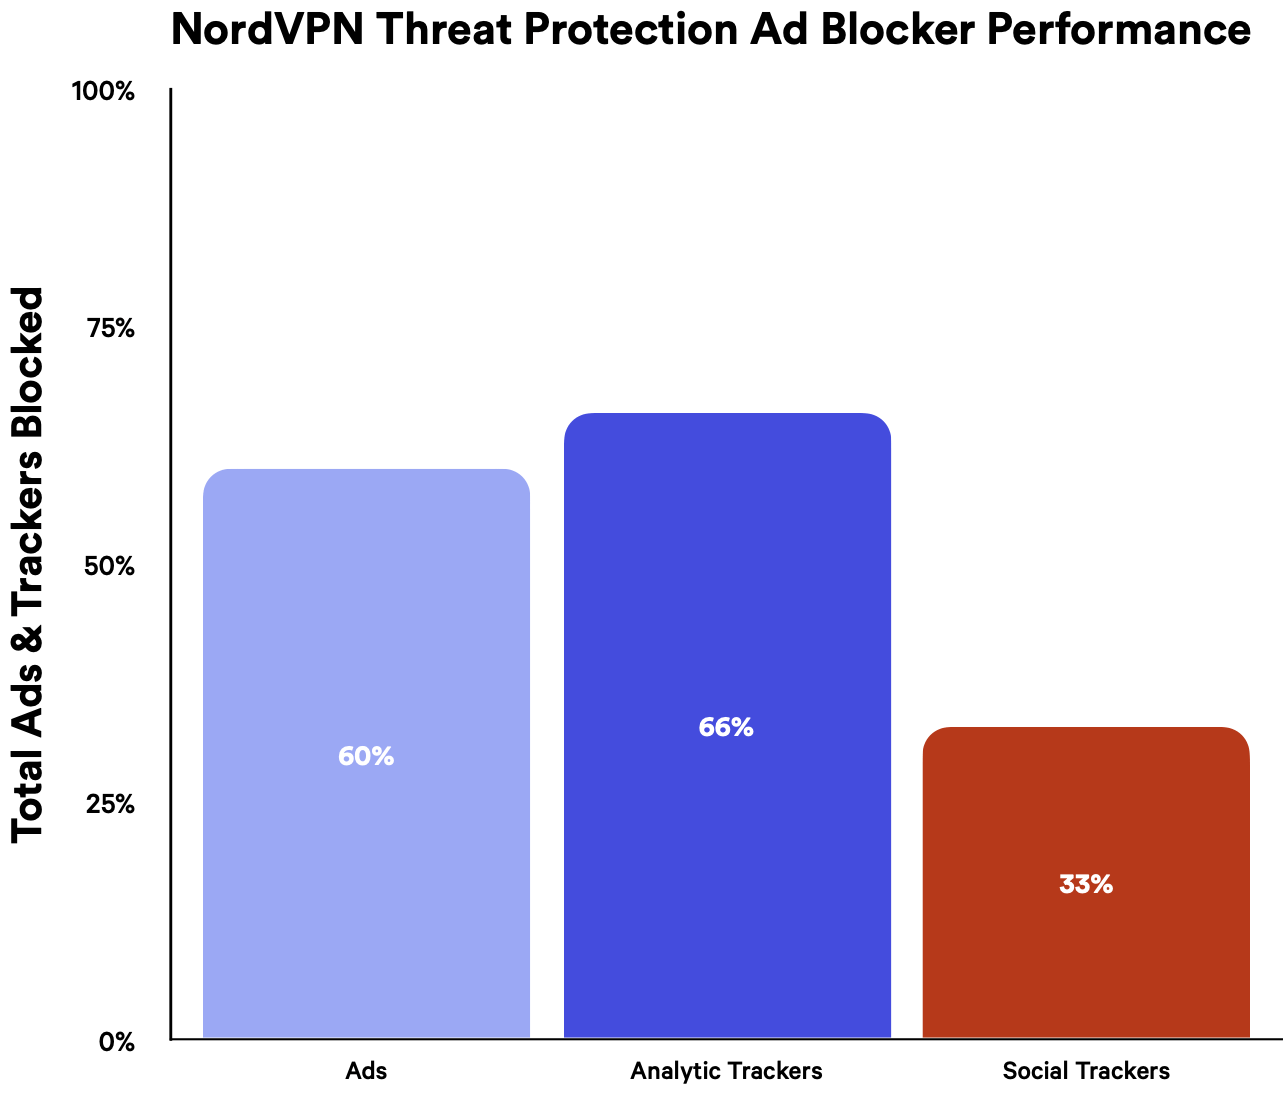 Les performances du bloqueur de publicité de NordVPN représentées dans un graphique.